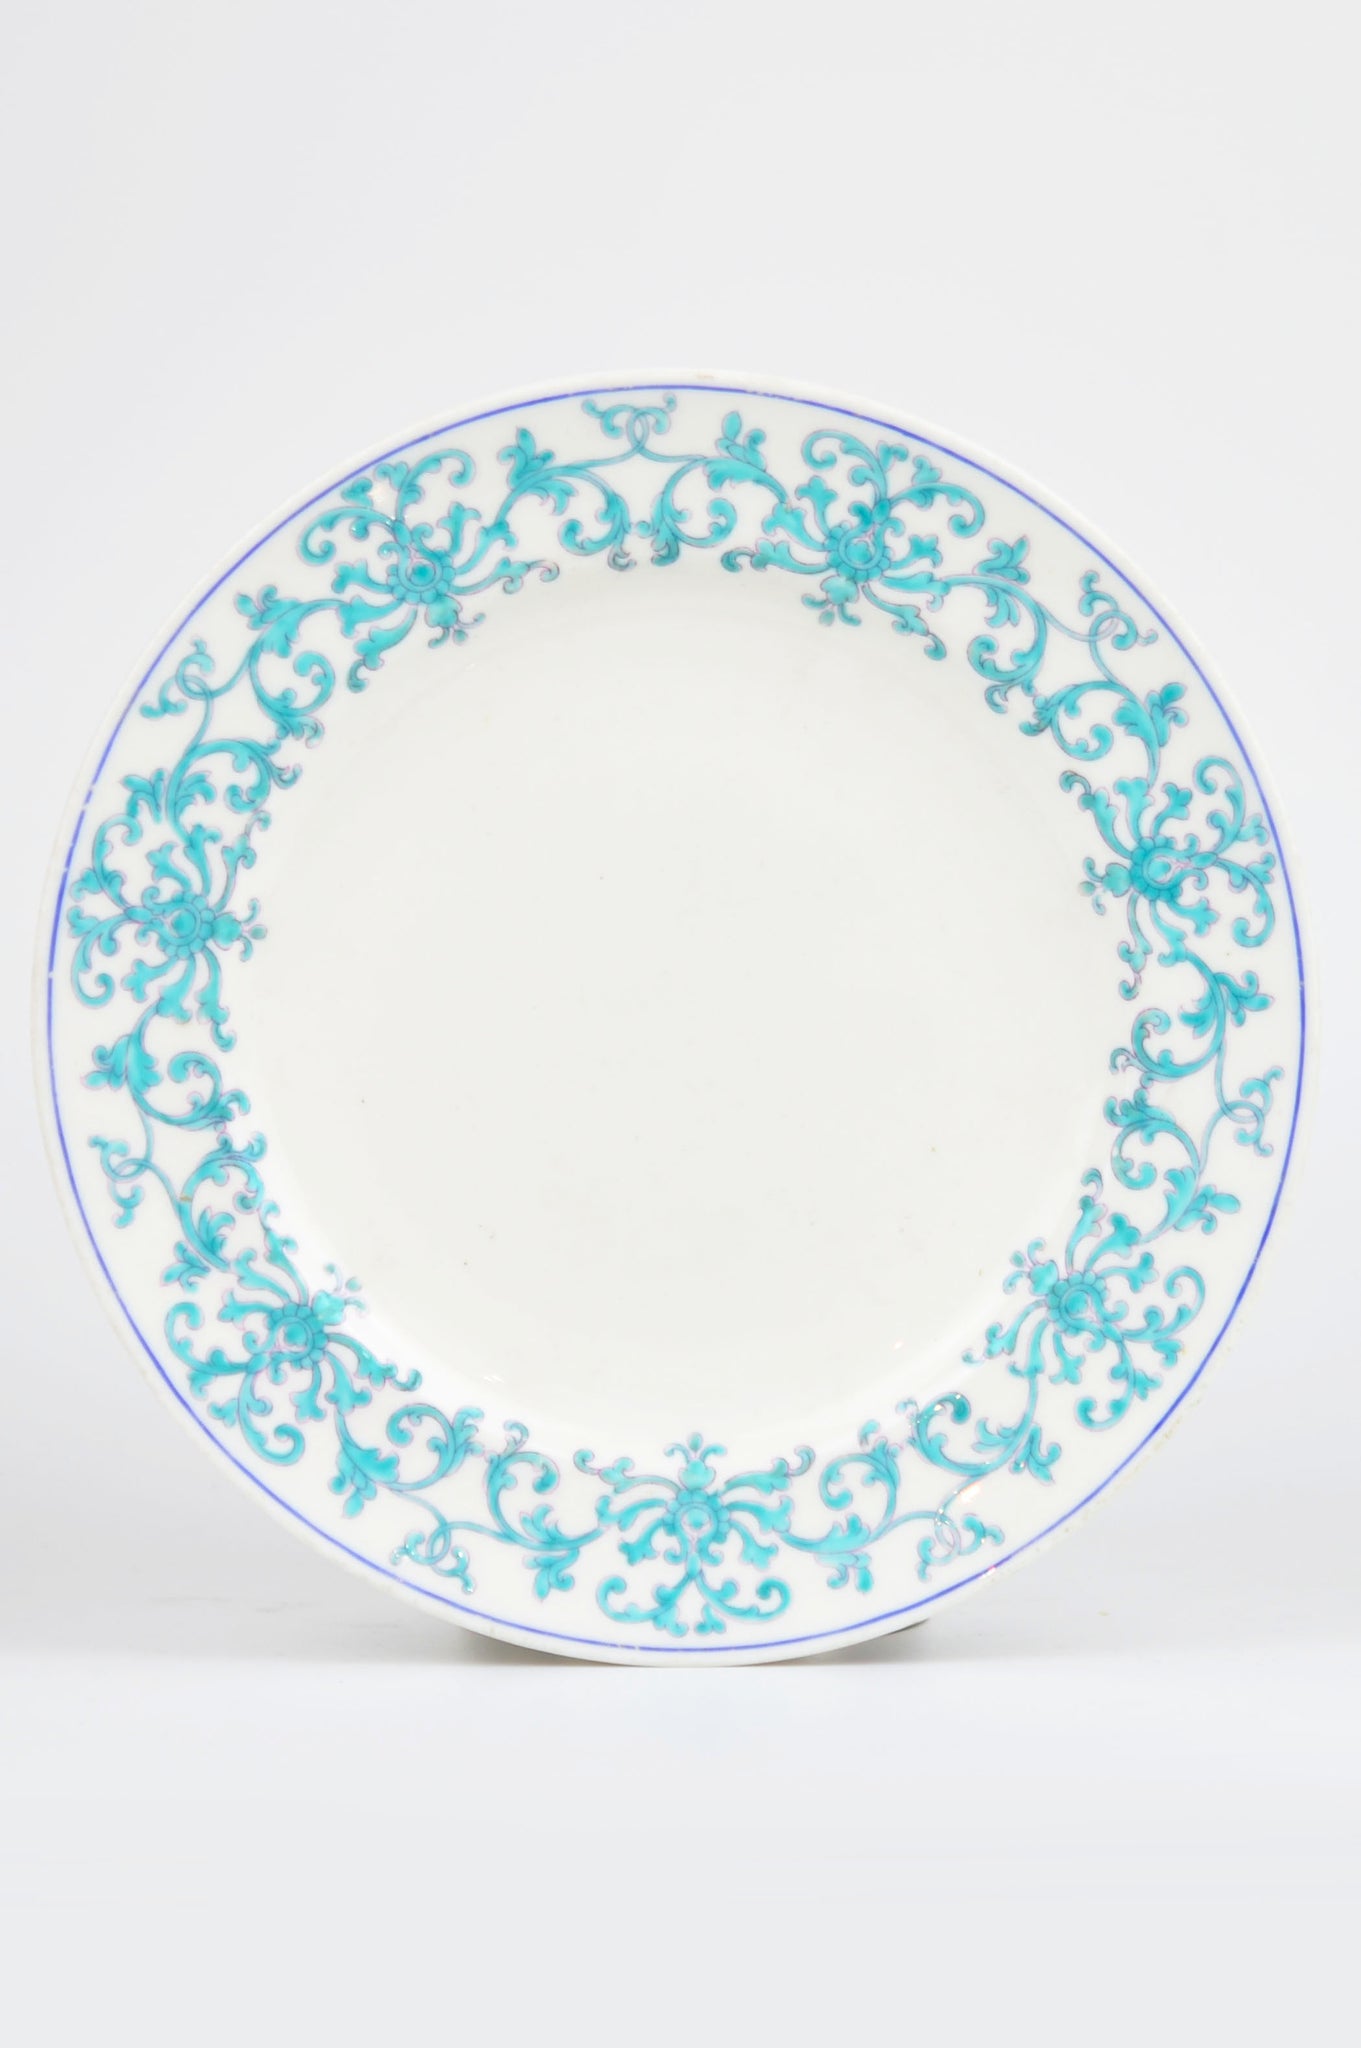 Minton Porcelain Tea Plate Designed by Felix Summerly (Henry Cole) c.1848